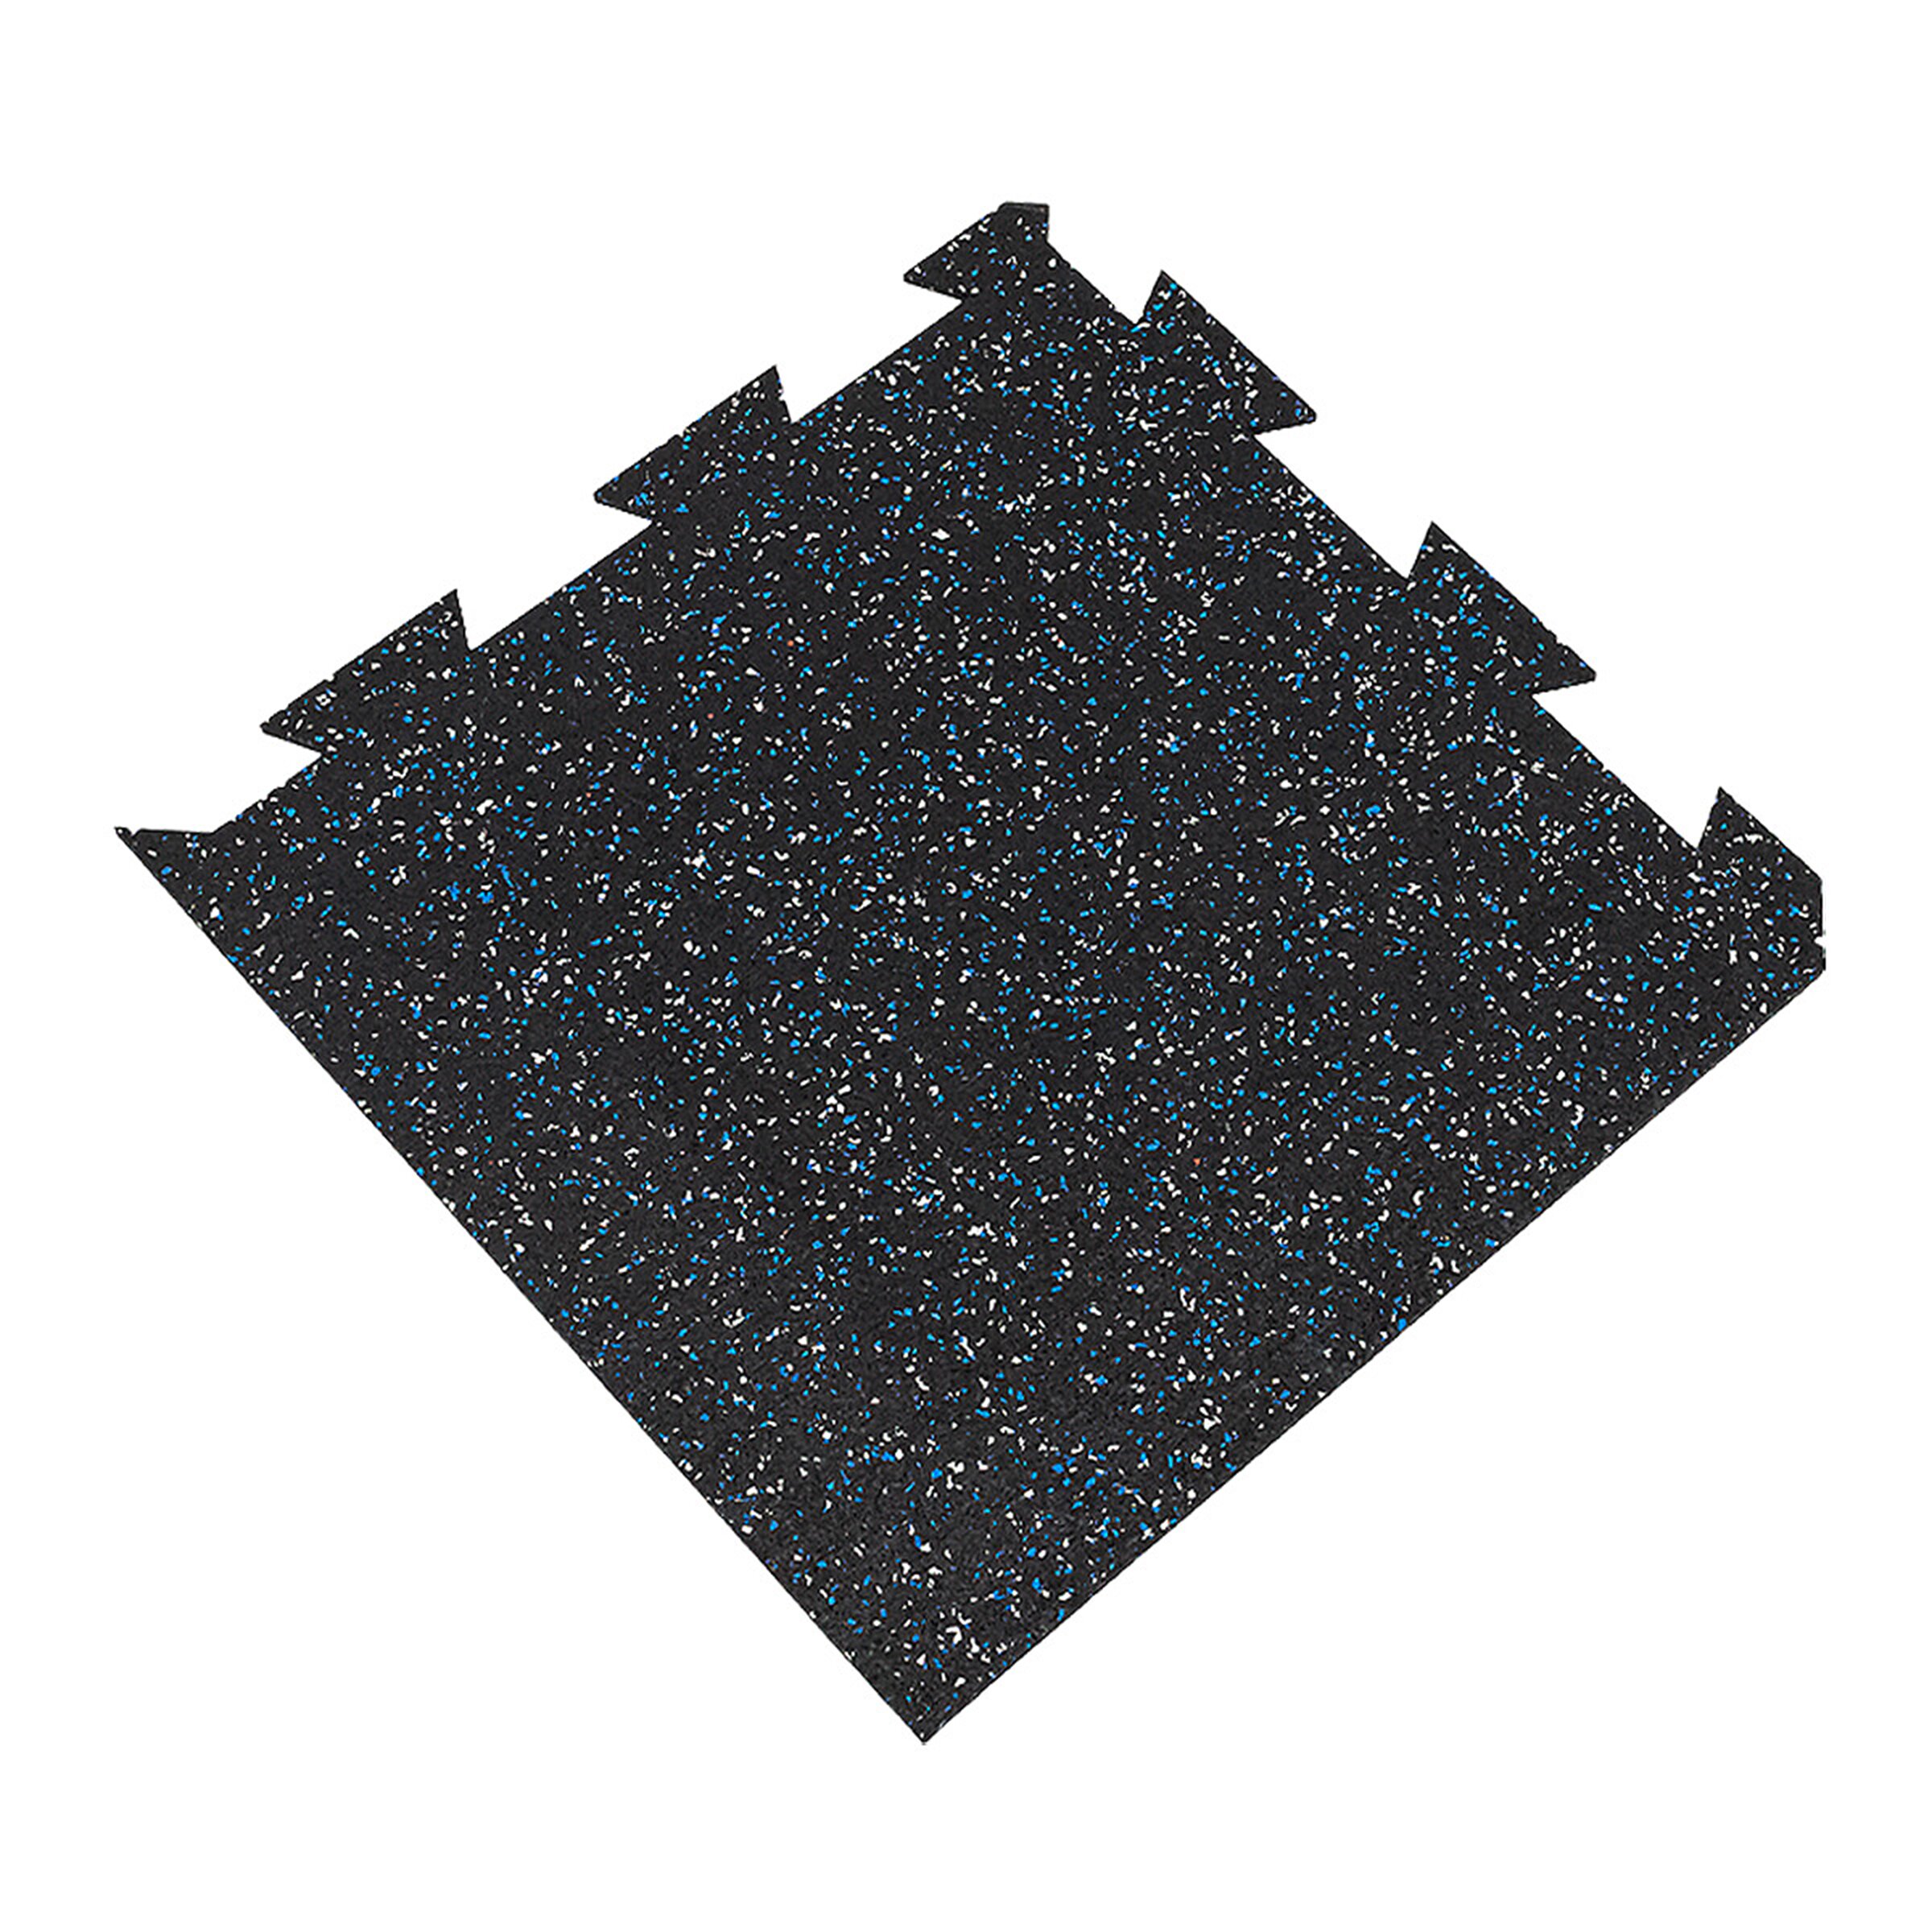 Čierno-bielo-modrá podlahová guma (puzzle - roh) FLOMA FitFlo SF1050 - dĺžka 50 cm, šírka 50 cm, výška 1 cm